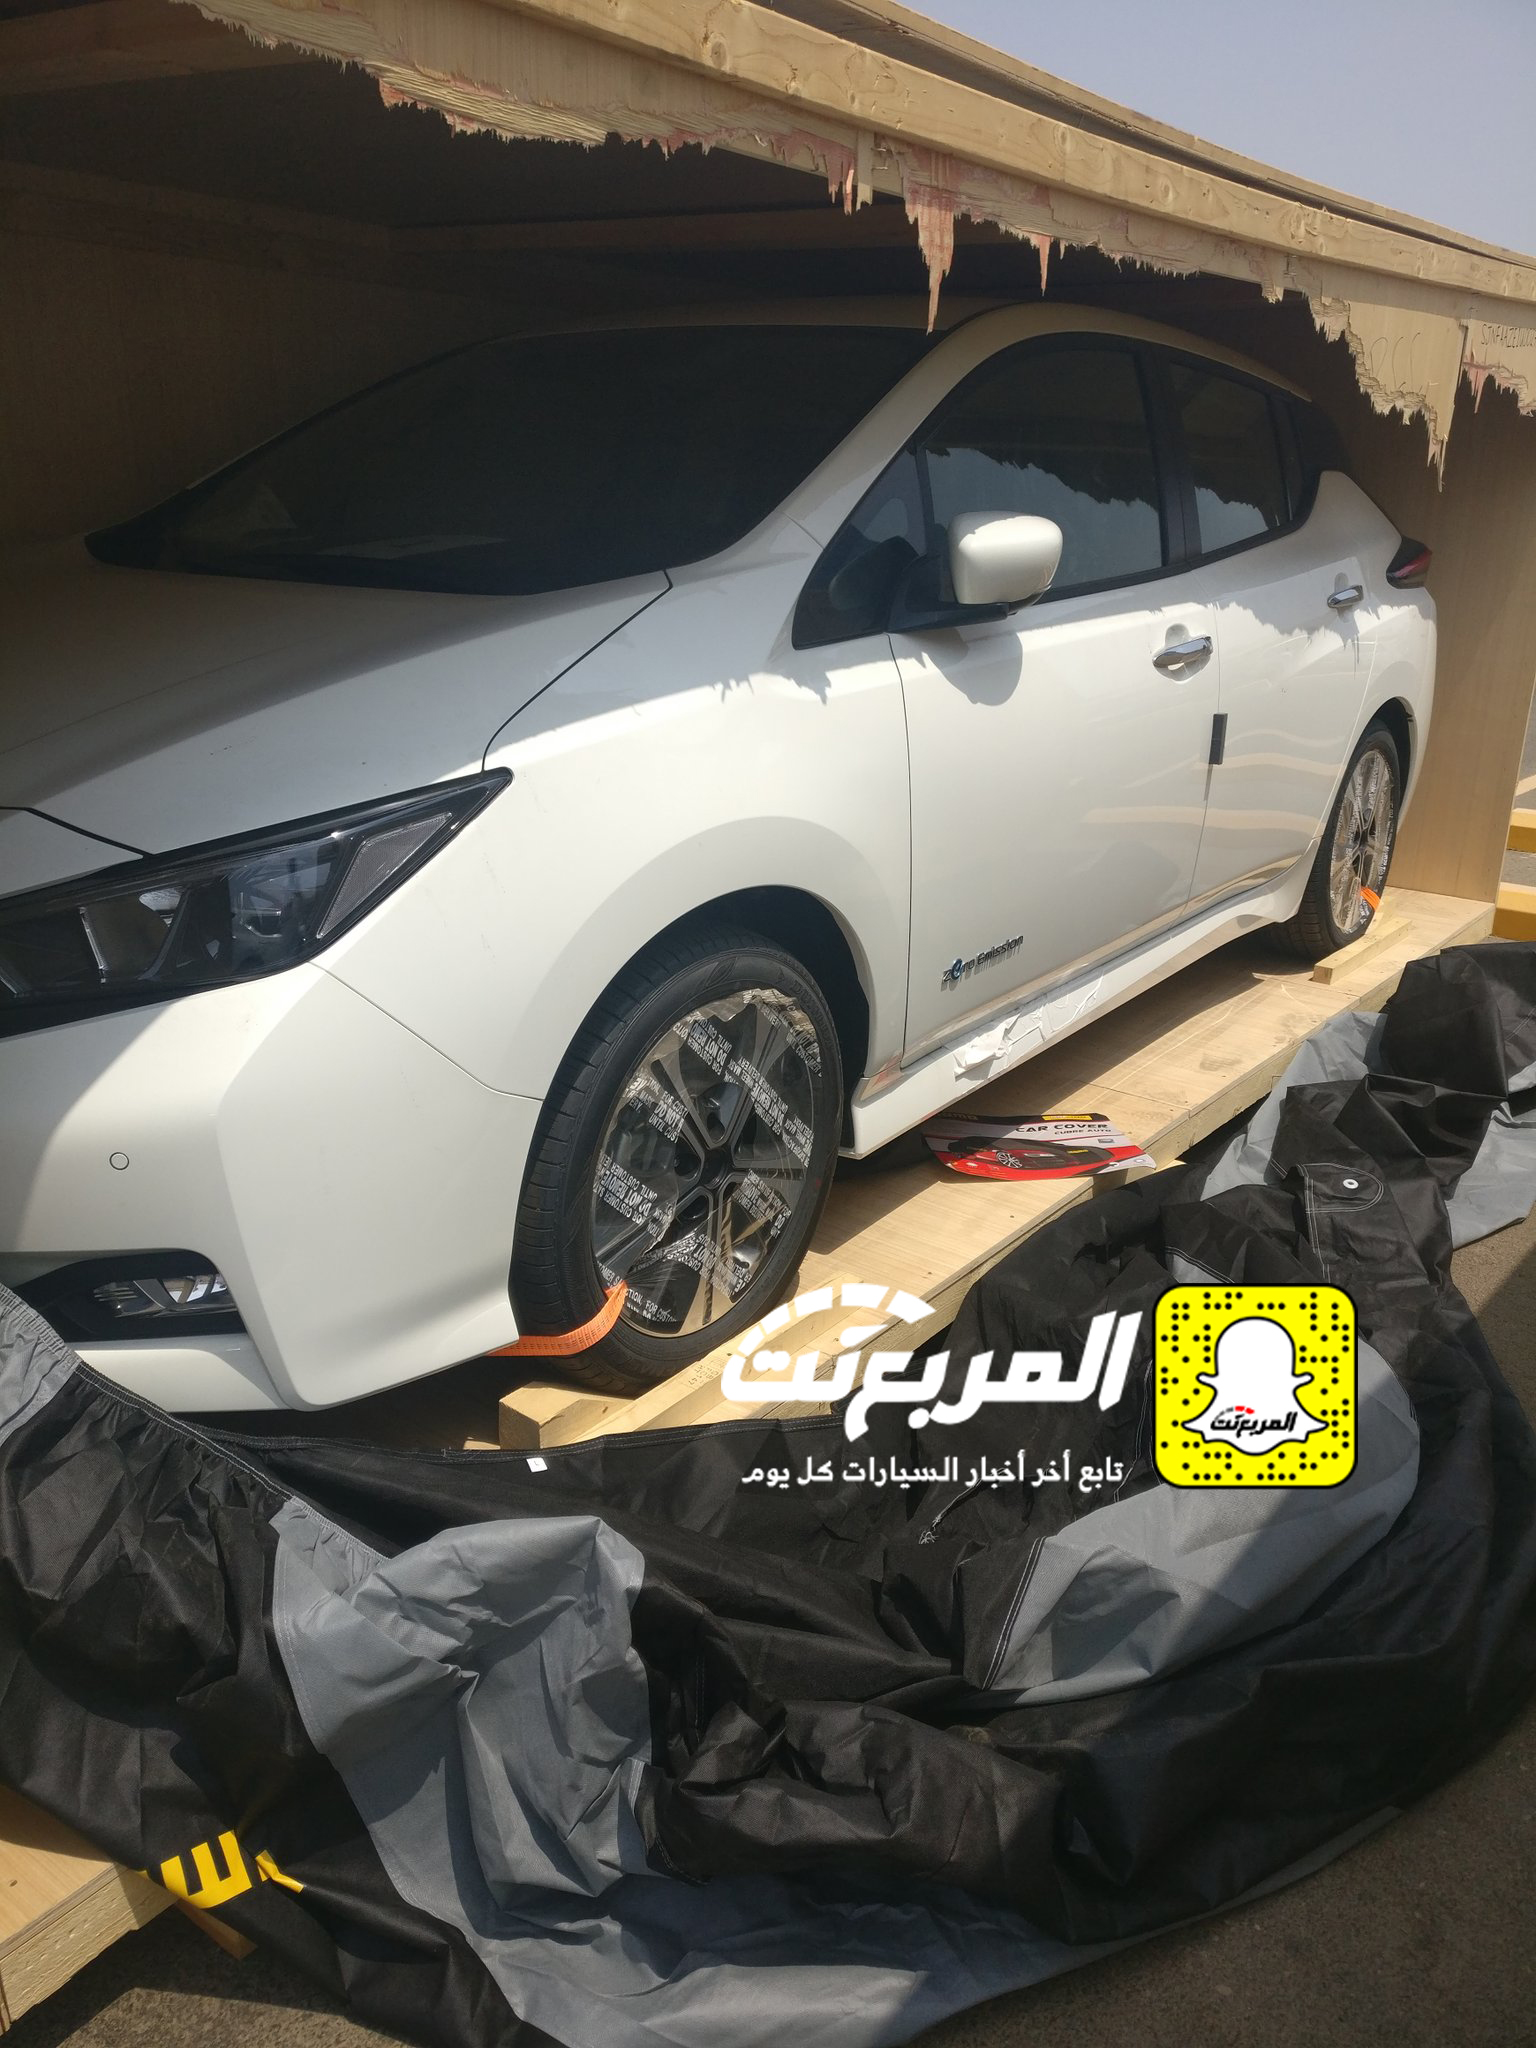 "بالصور" وصول سيارات نيسان ليف الكهربائية الى السعودية لإجراء اختبارات عليها 1